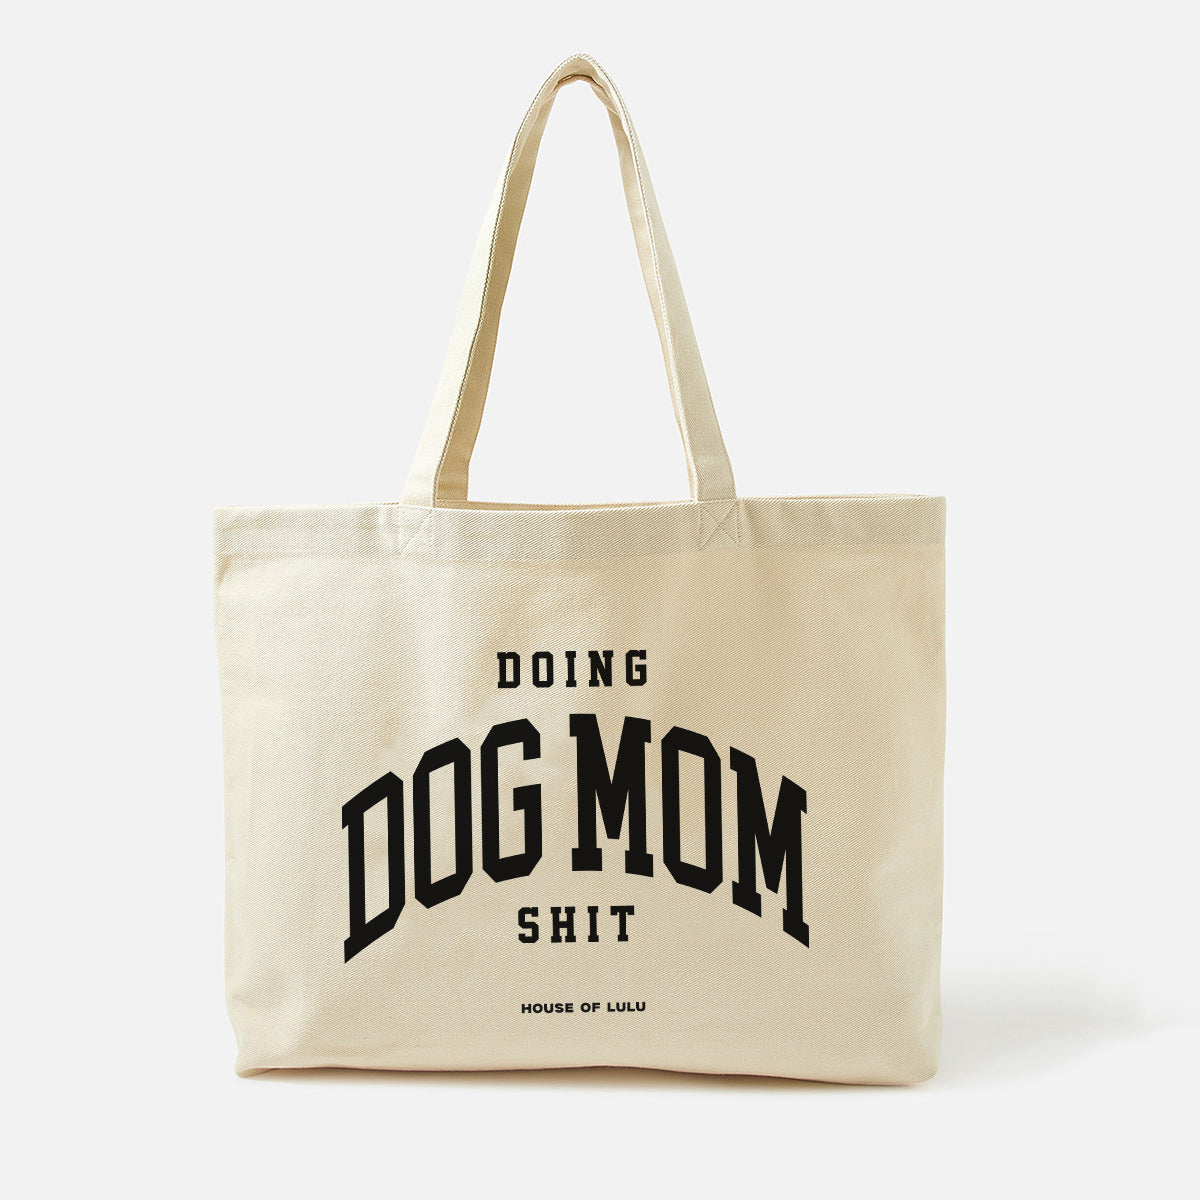 Doing Dog Mom Shit Tote Bag